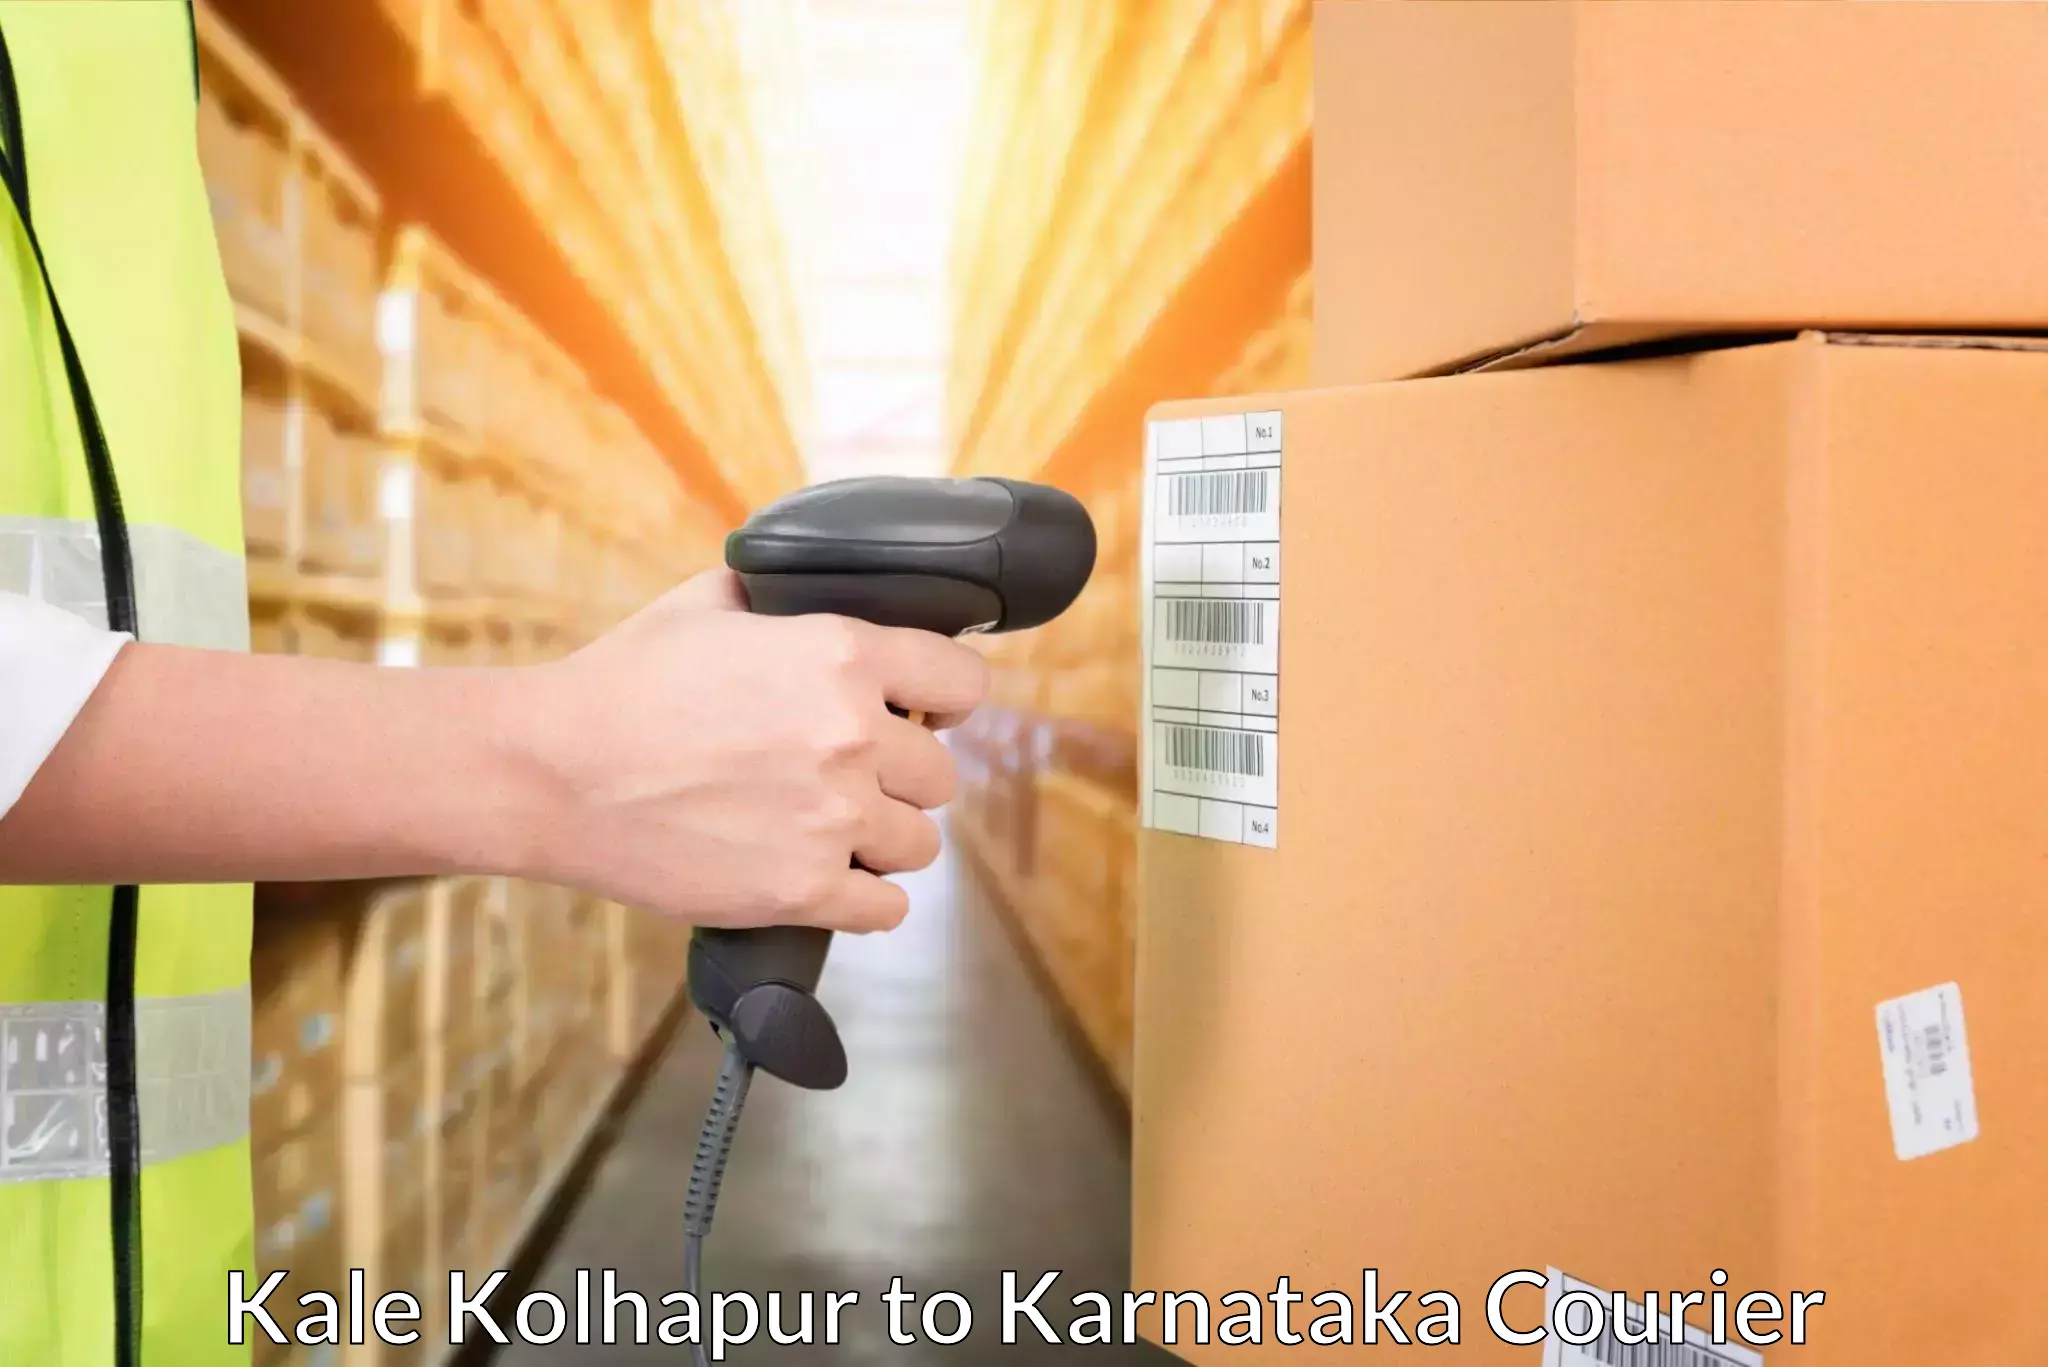 Seamless shipping service Kale Kolhapur to Karnataka